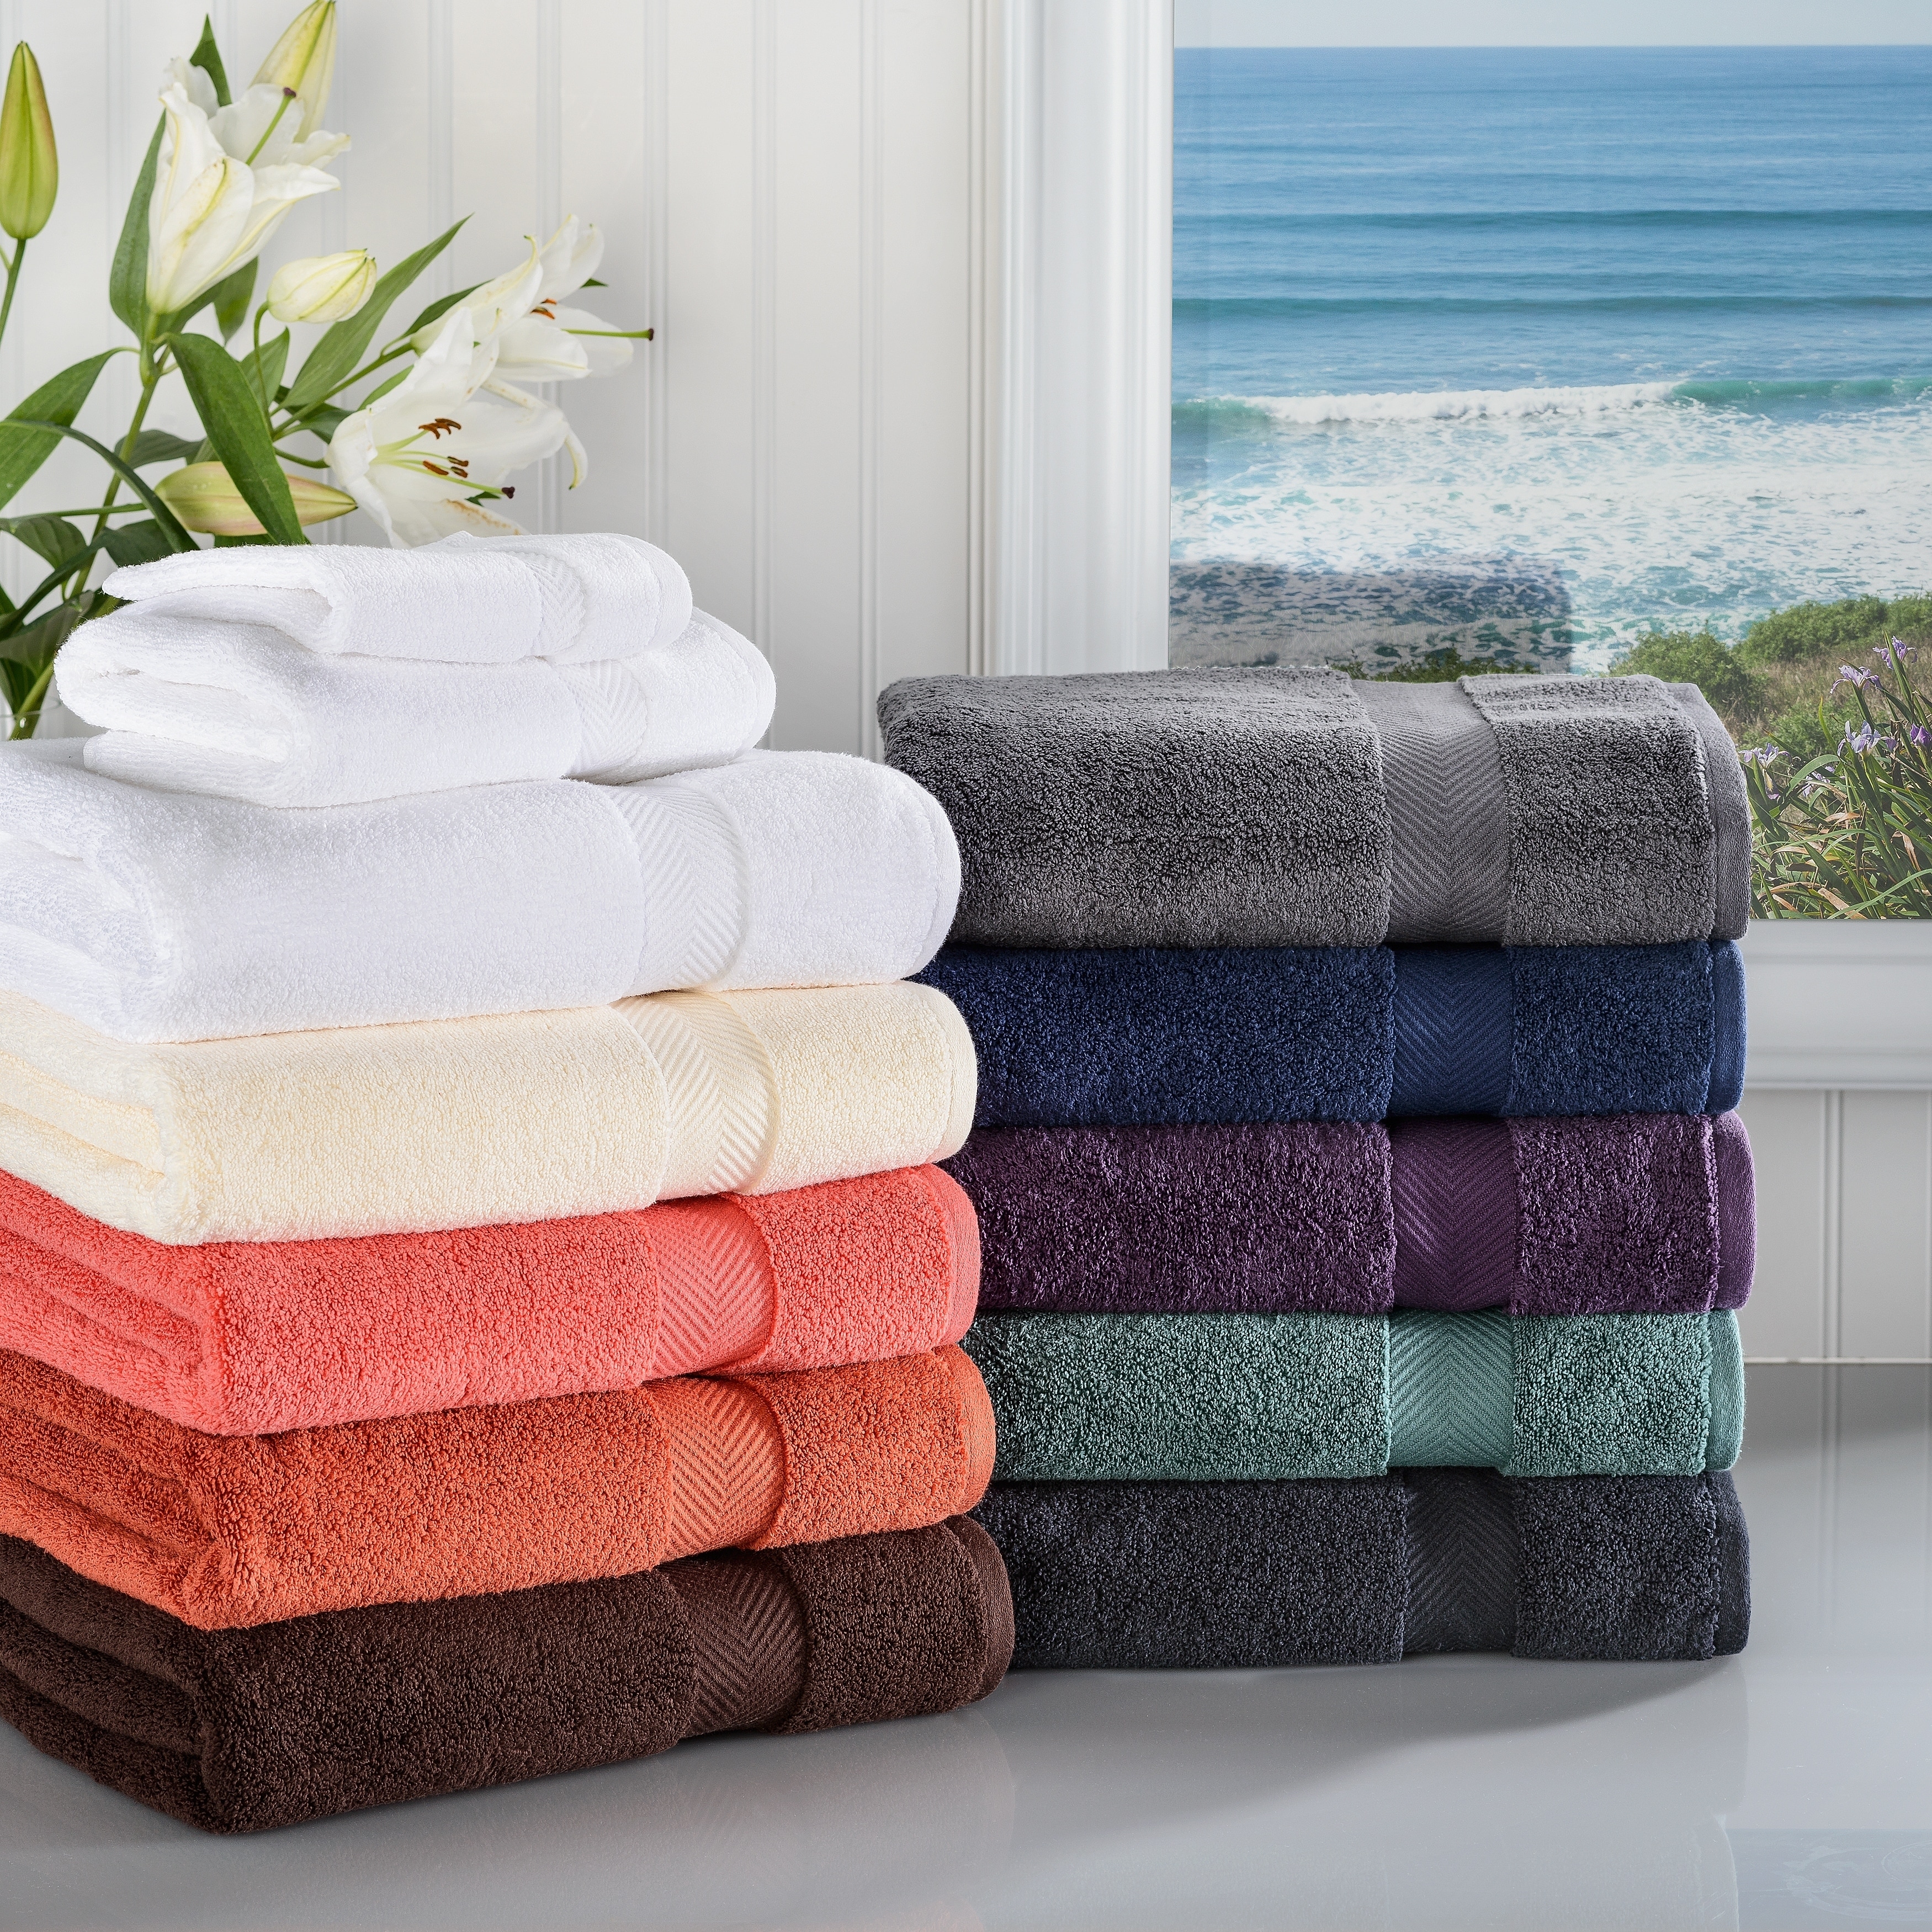 Textile полотенце. Soft Cotton Havlu. Полотенца в ванной. Хлопчатобумажное полотенце. Стопка полотенец.